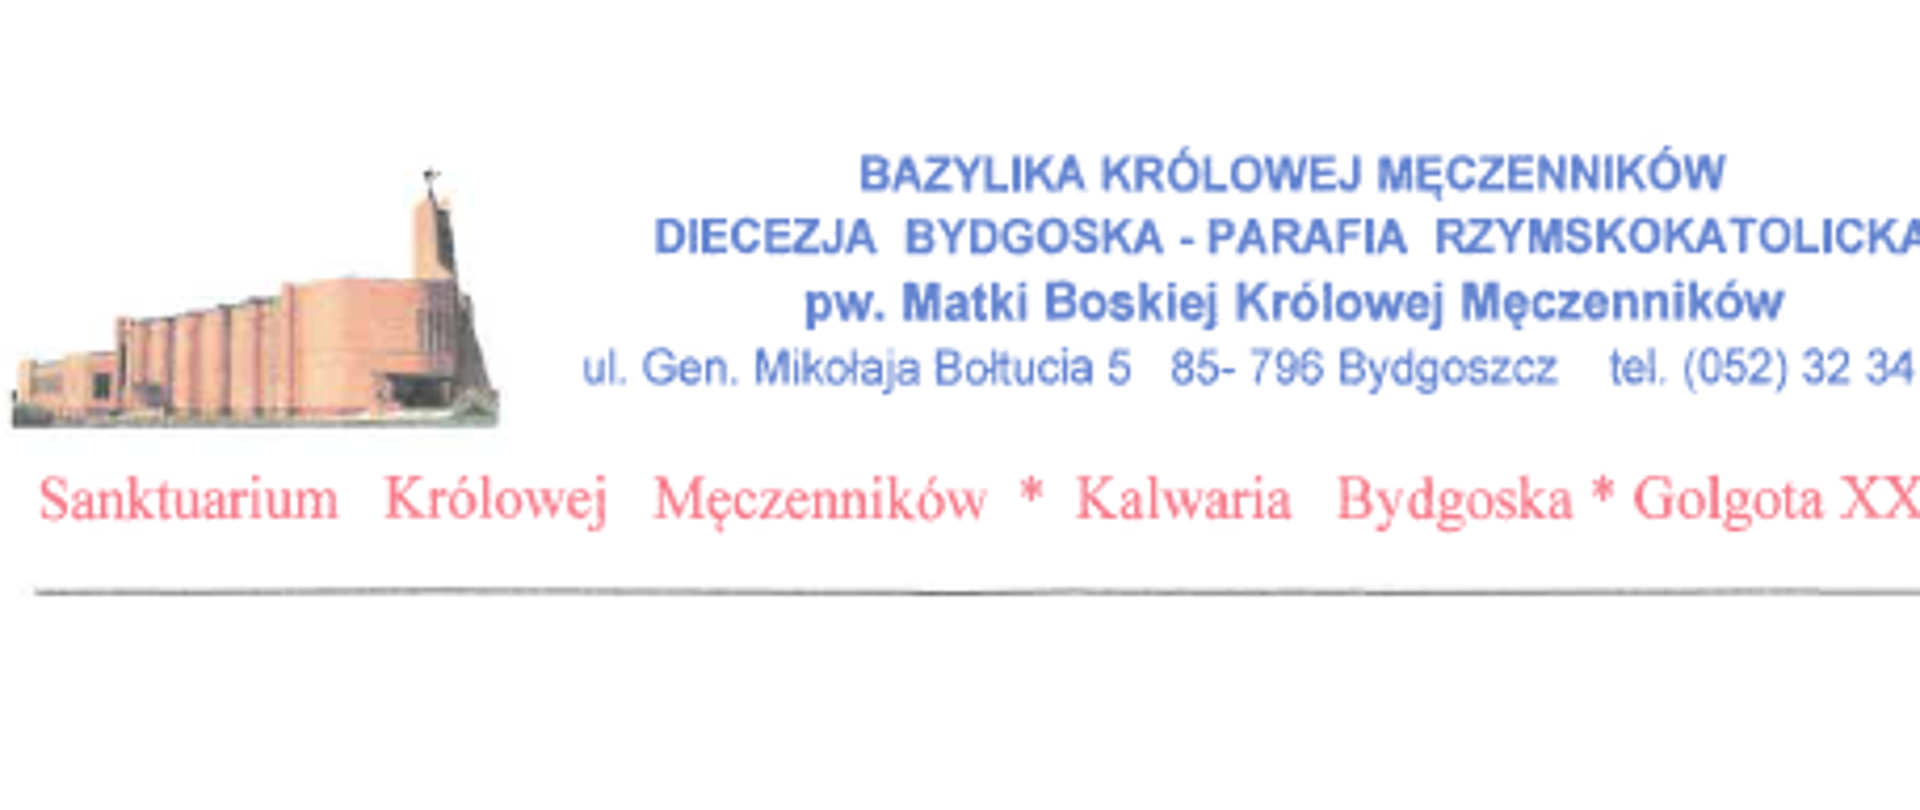 Treść podziękowań za dostarczenie maseczek, podziękowania są kierowane do Komendanta Miejskiego PSP w Bydgoszczy od Bazyliki Królowej Męczenników